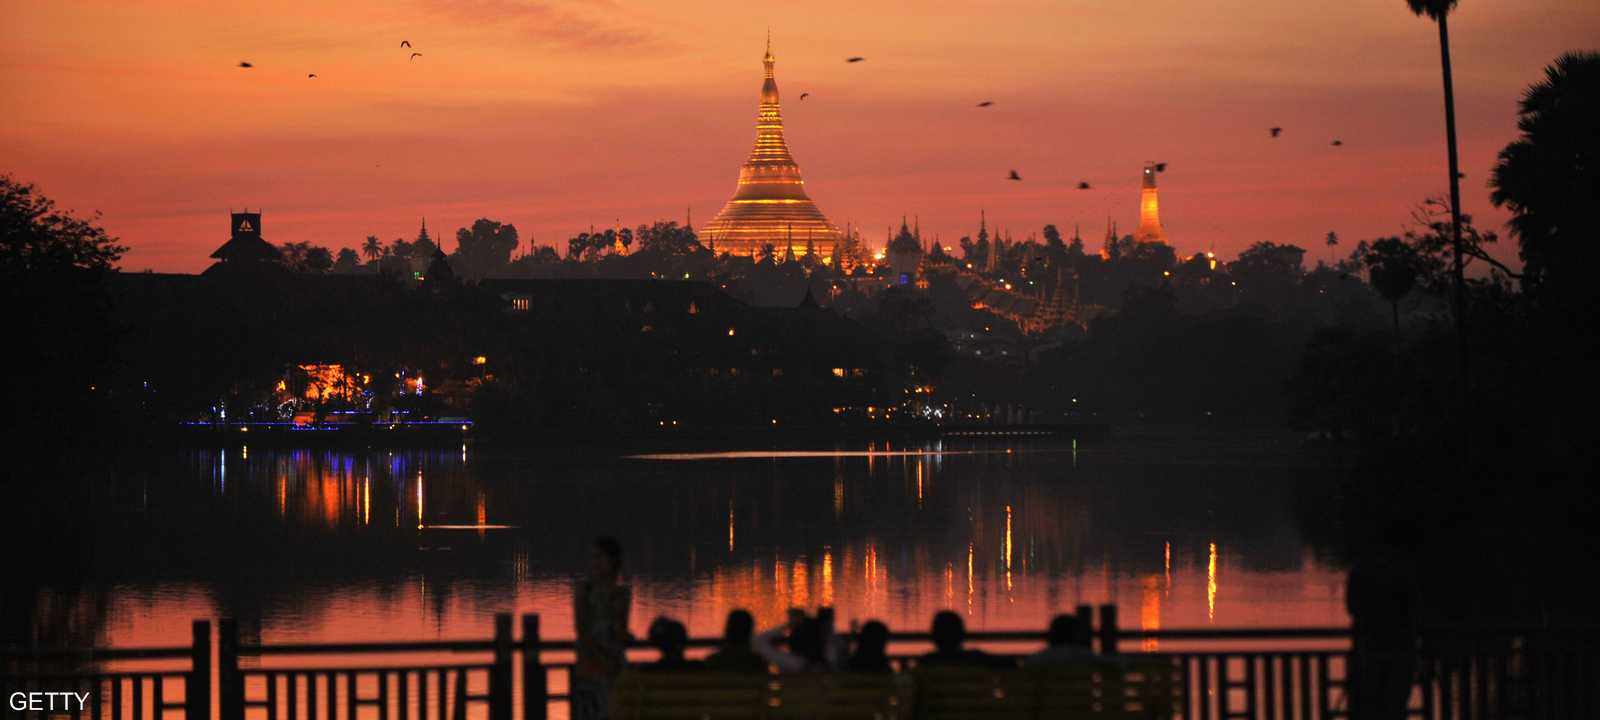 ميانمار تتوقع شطب المزيد من ديونها خلال الأشهر الستة المقبلة